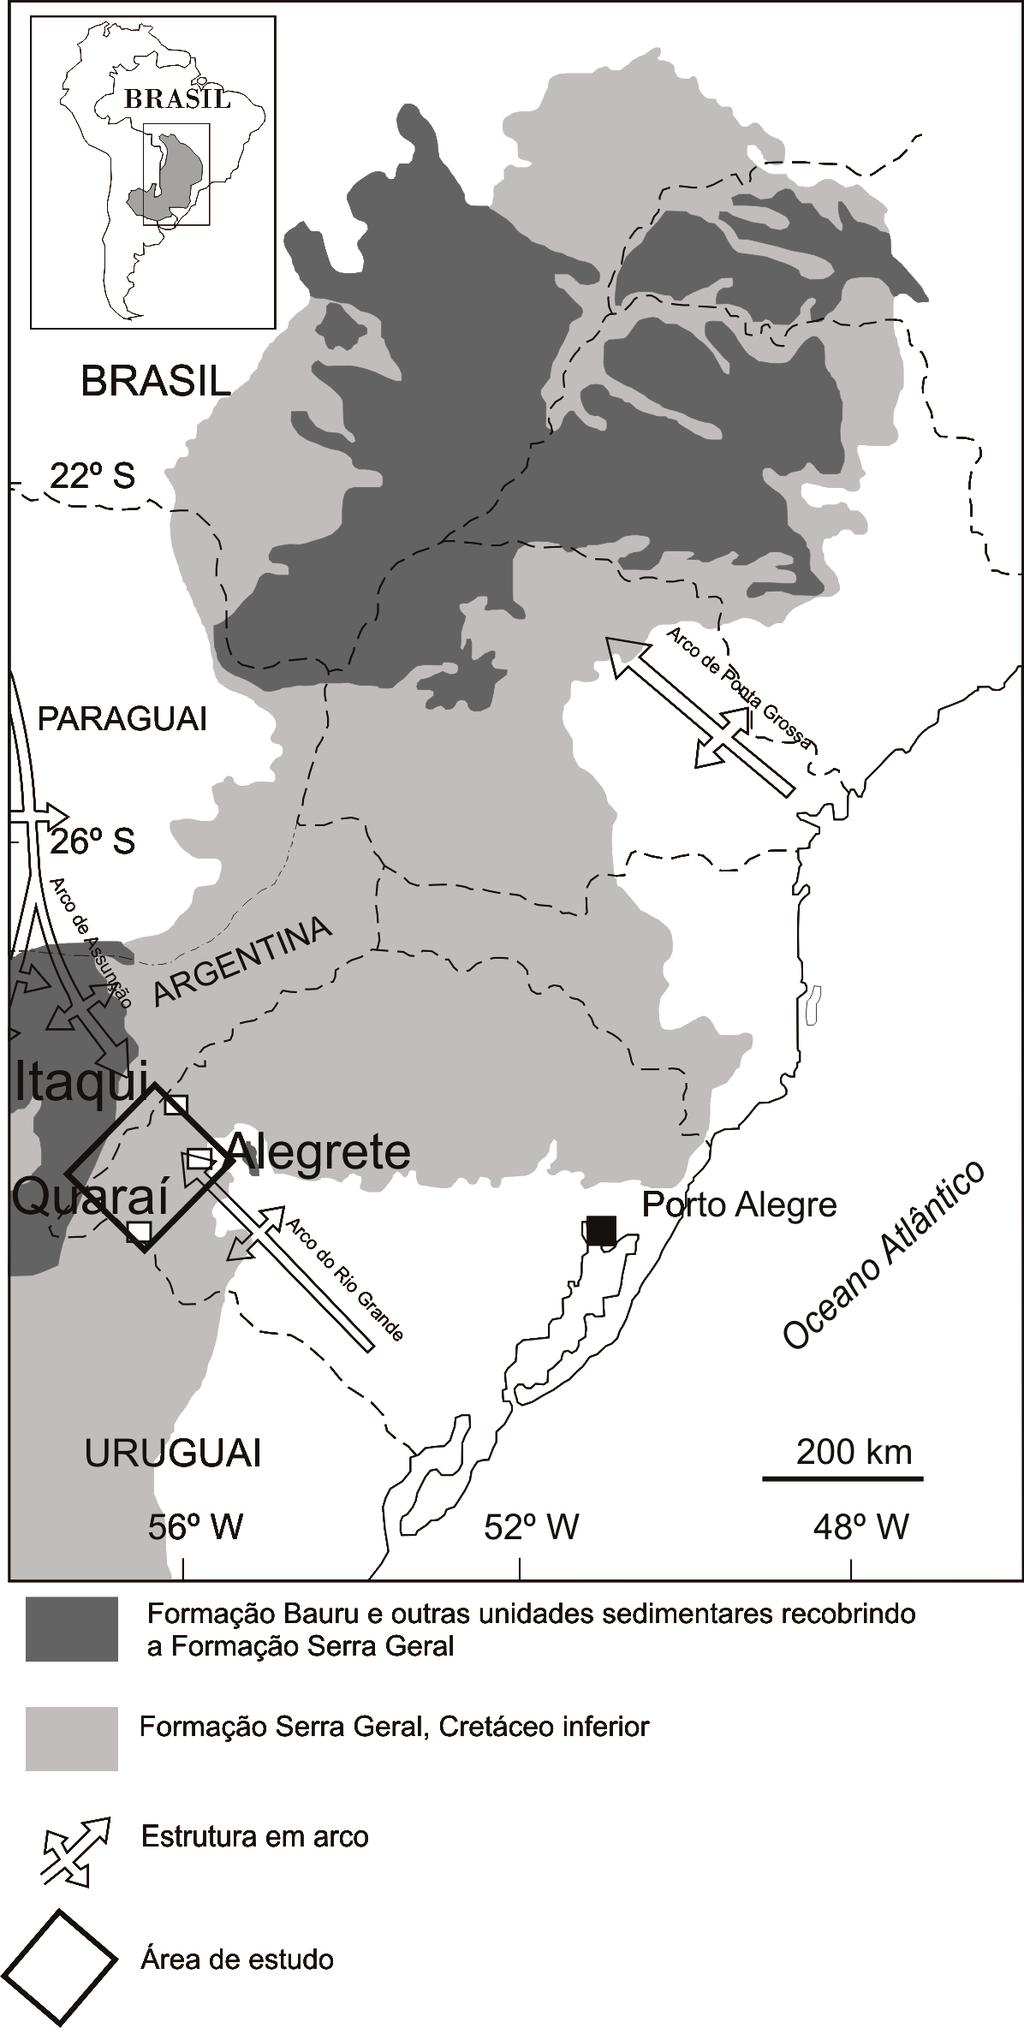 Martins et al. Figura 1. Mapa geológico da Formação Serra Geral, com a área de estudo indicada (modificado de Gilg et al., 2003).